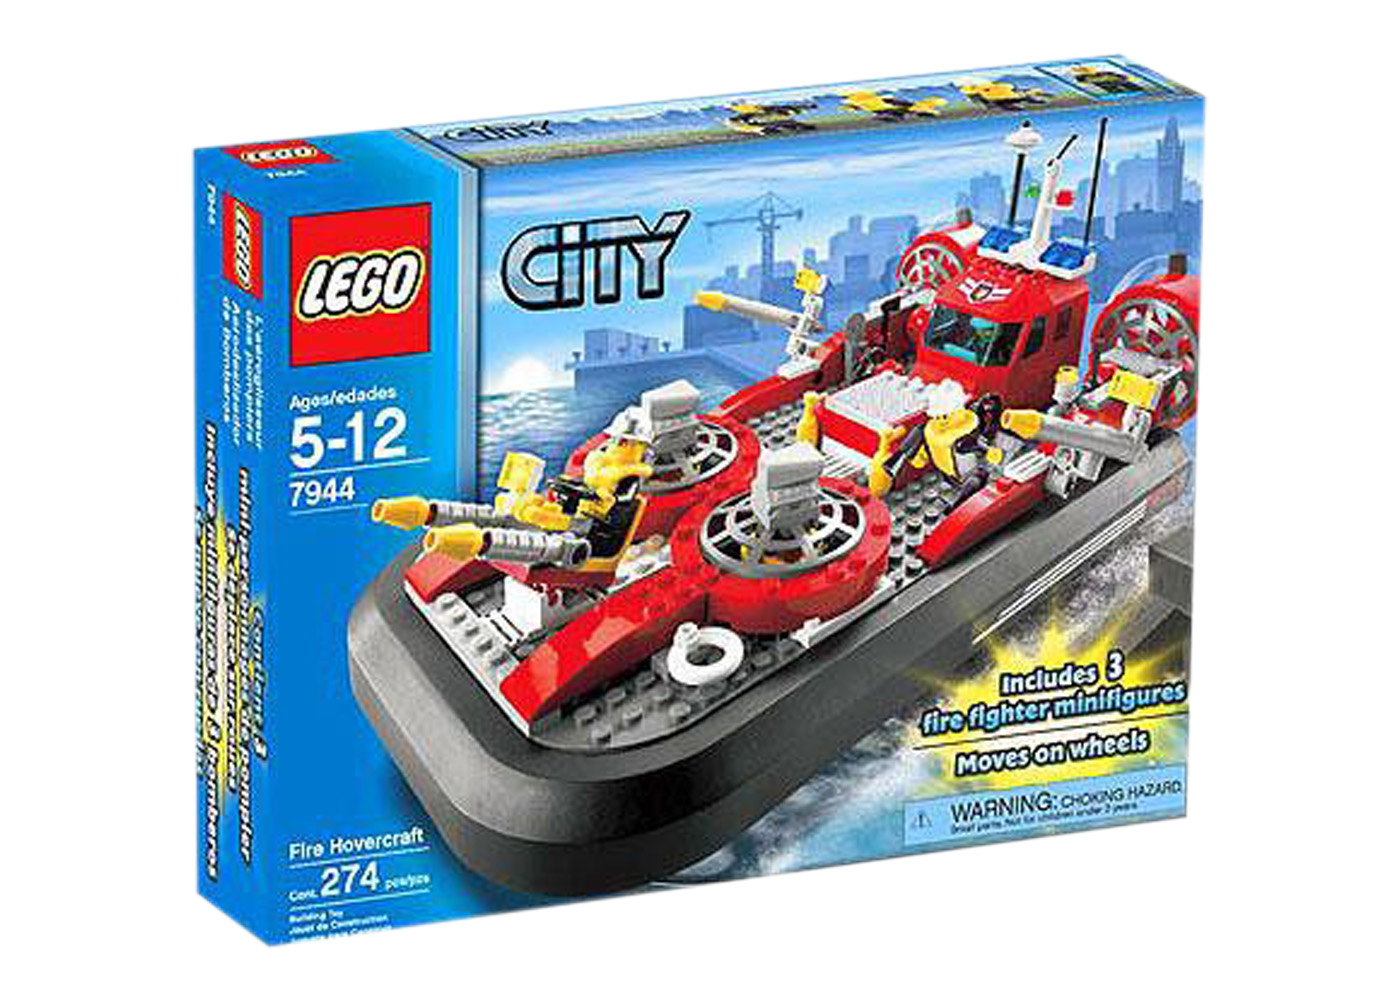 LEGO City Fire Hovercraft Set 7944